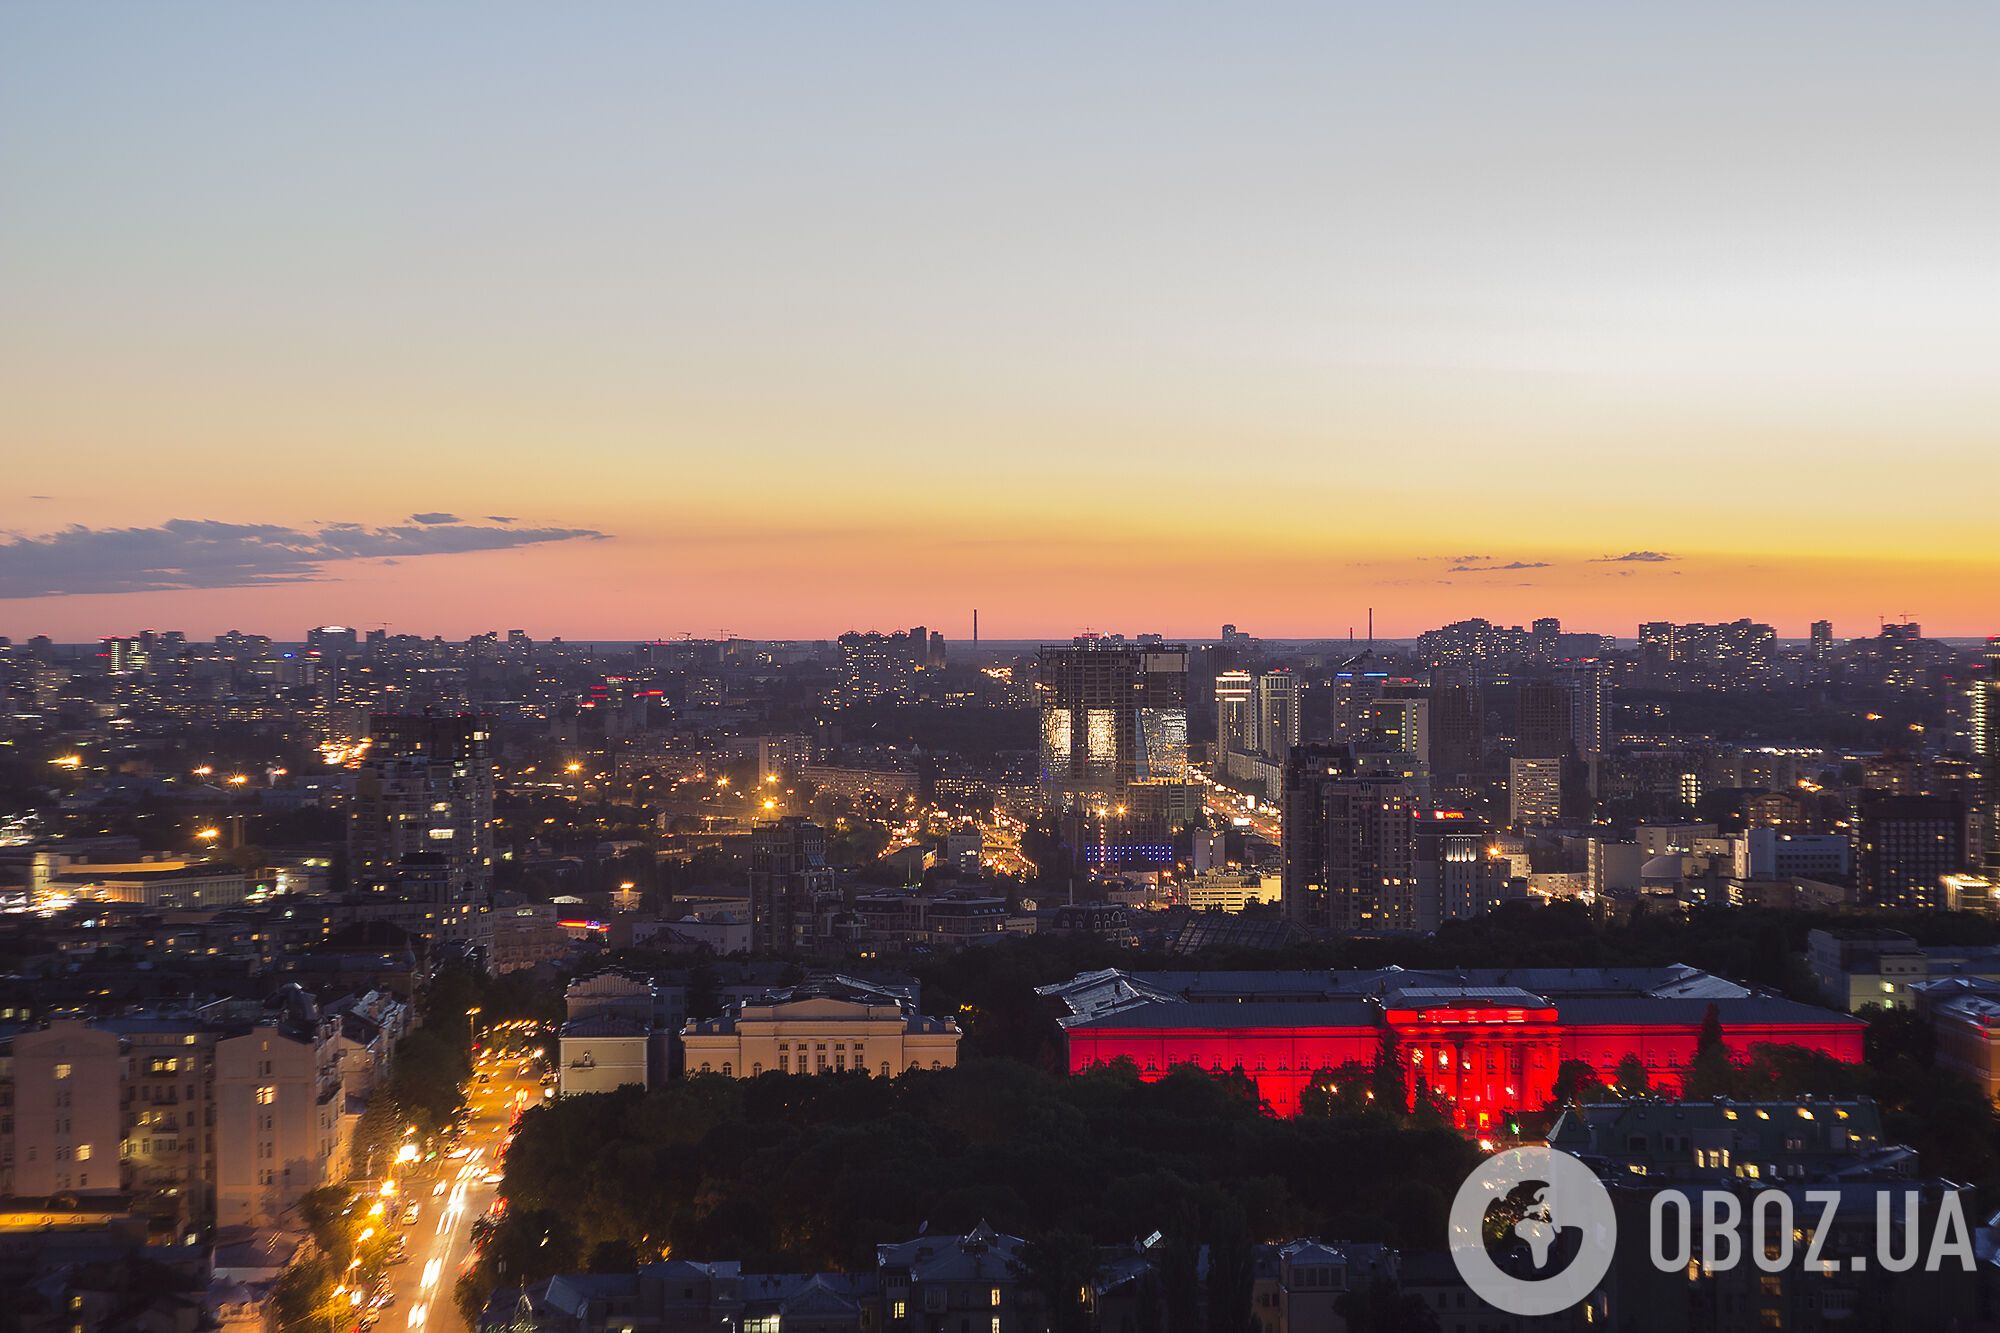 Огни Киева:  удивительные фото столицы с высоты